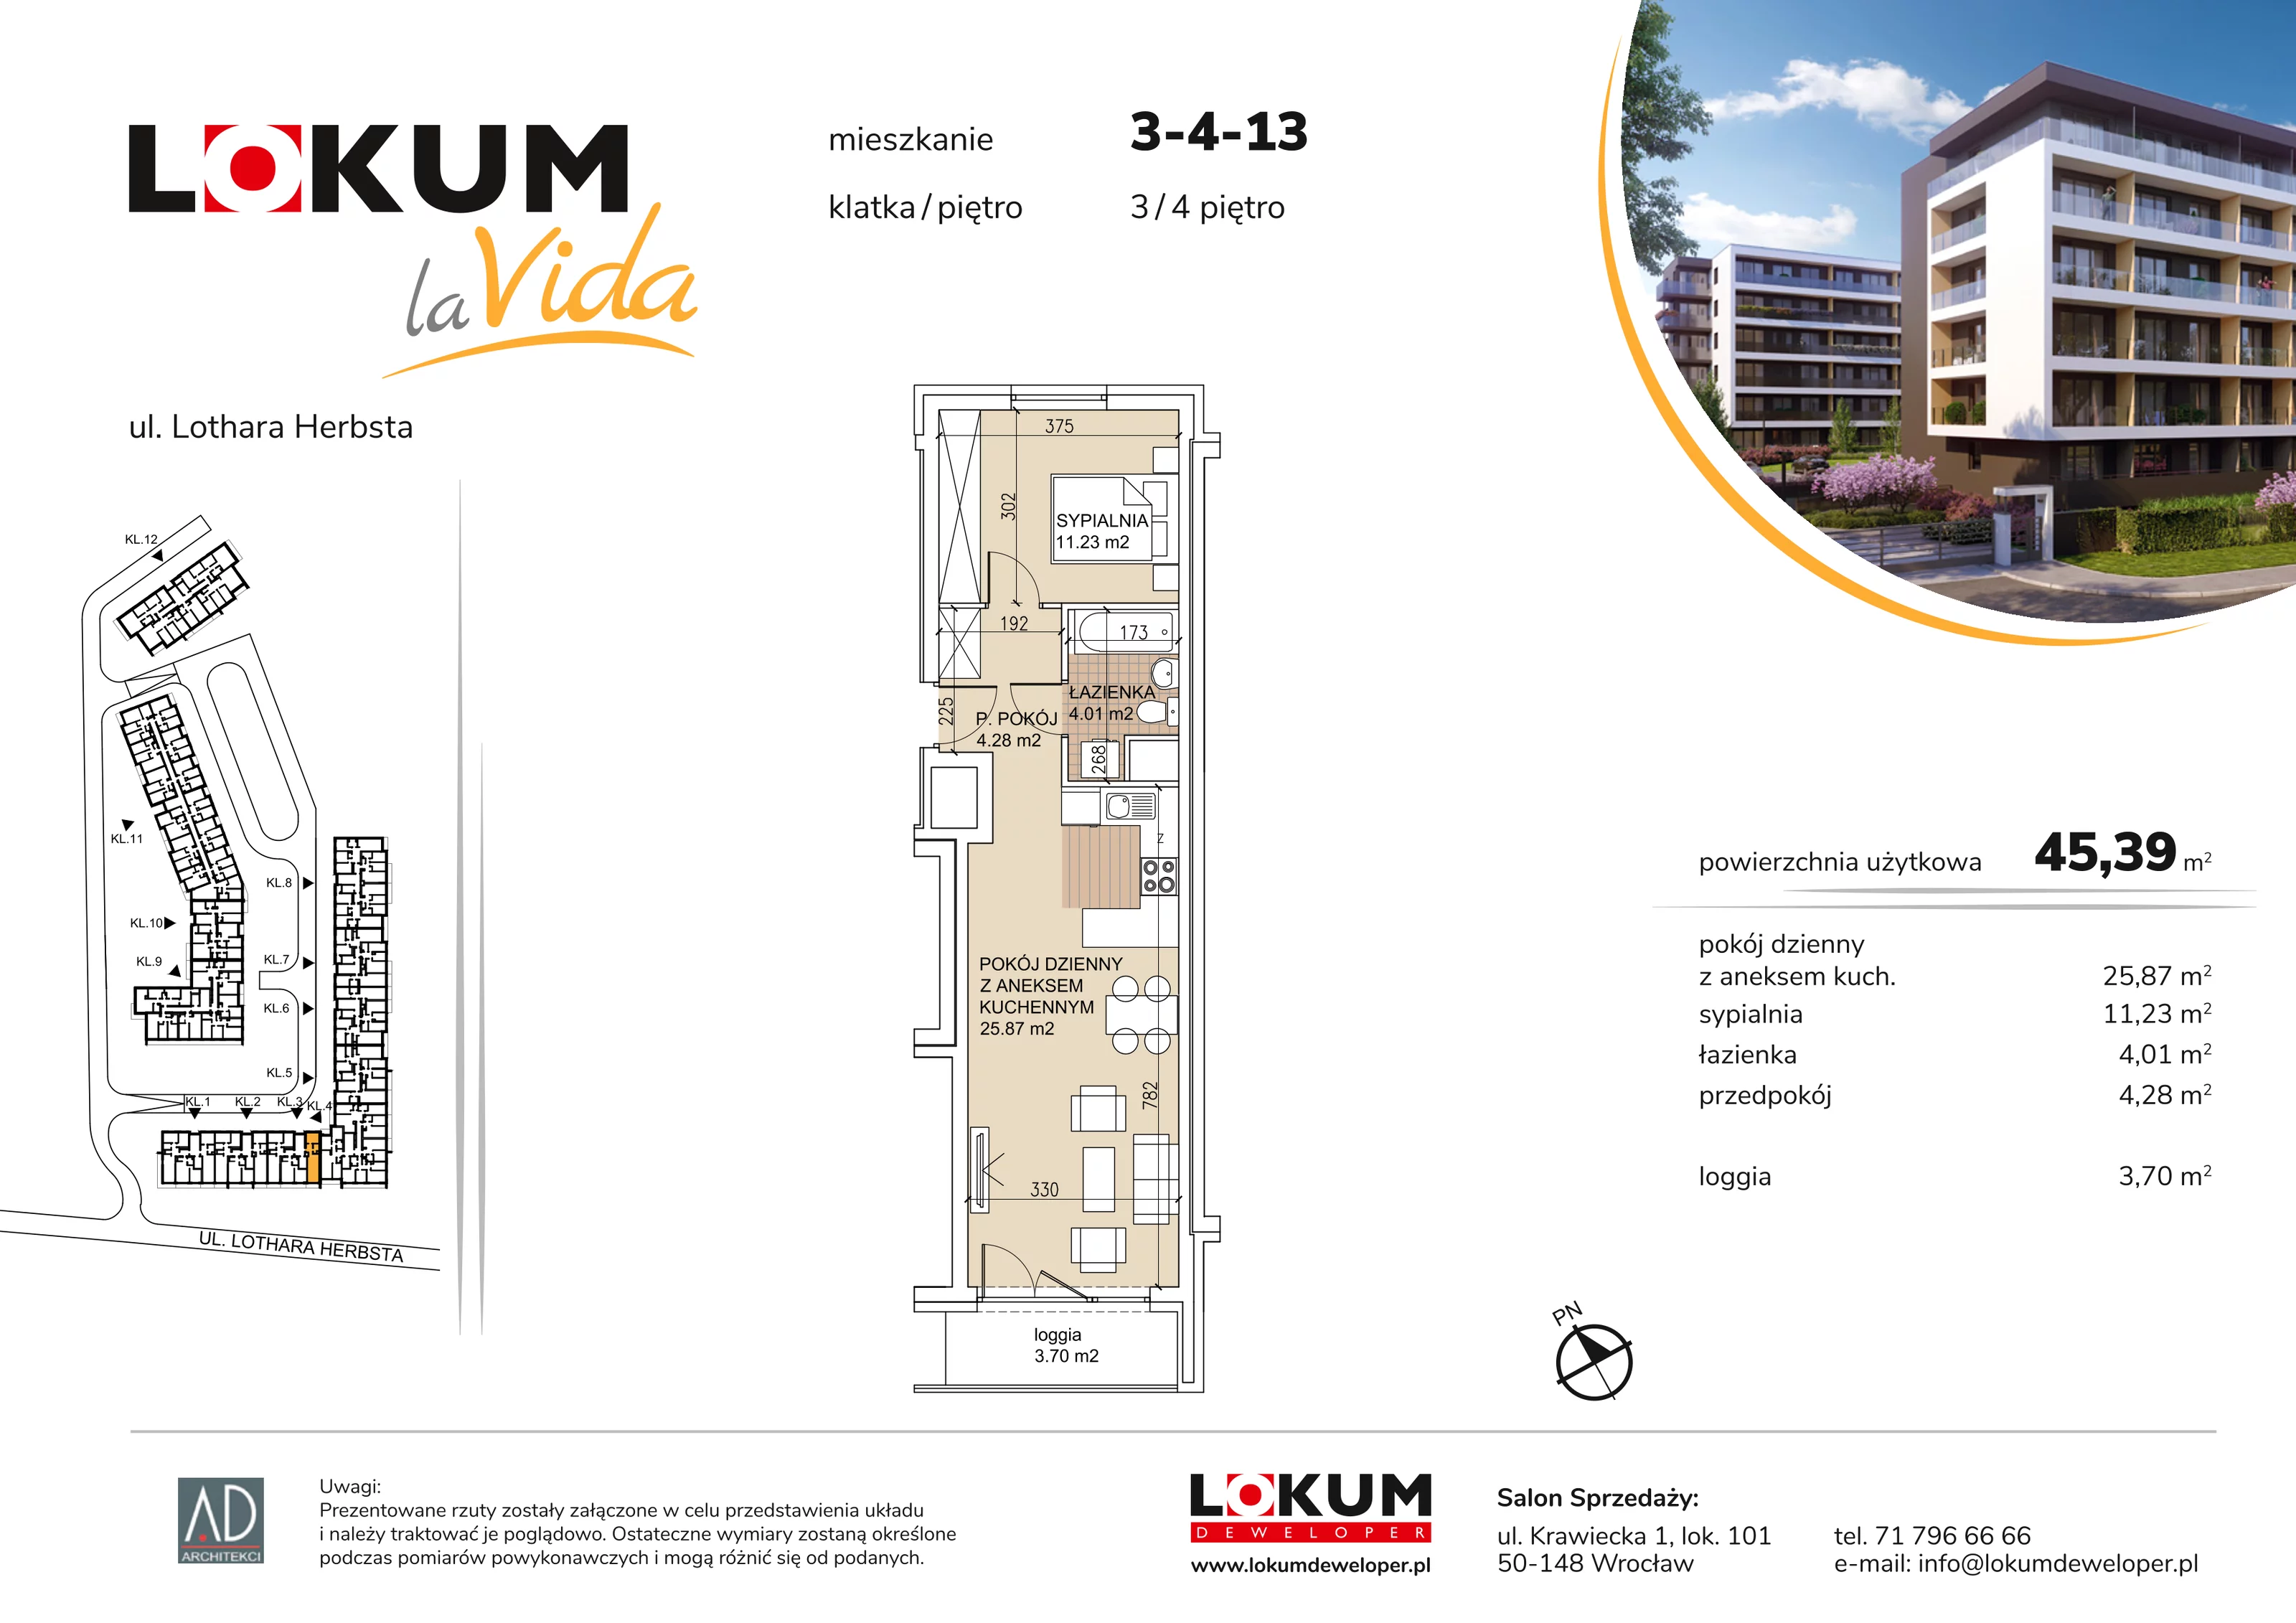 Mieszkanie 45,39 m², piętro 4, oferta nr 3-4-13, Lokum la Vida, Wrocław, Sołtysowice, ul. Lothara Herbsta